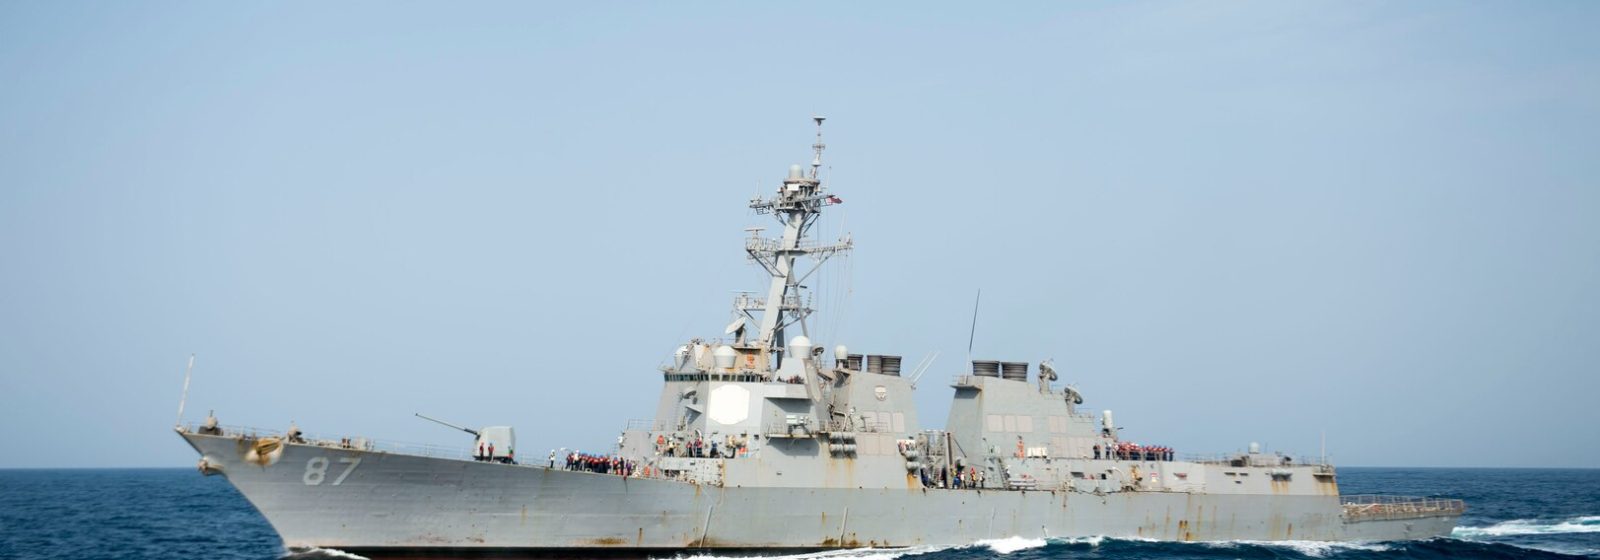 Het Amerikaanse oorlogsschip USS Mason